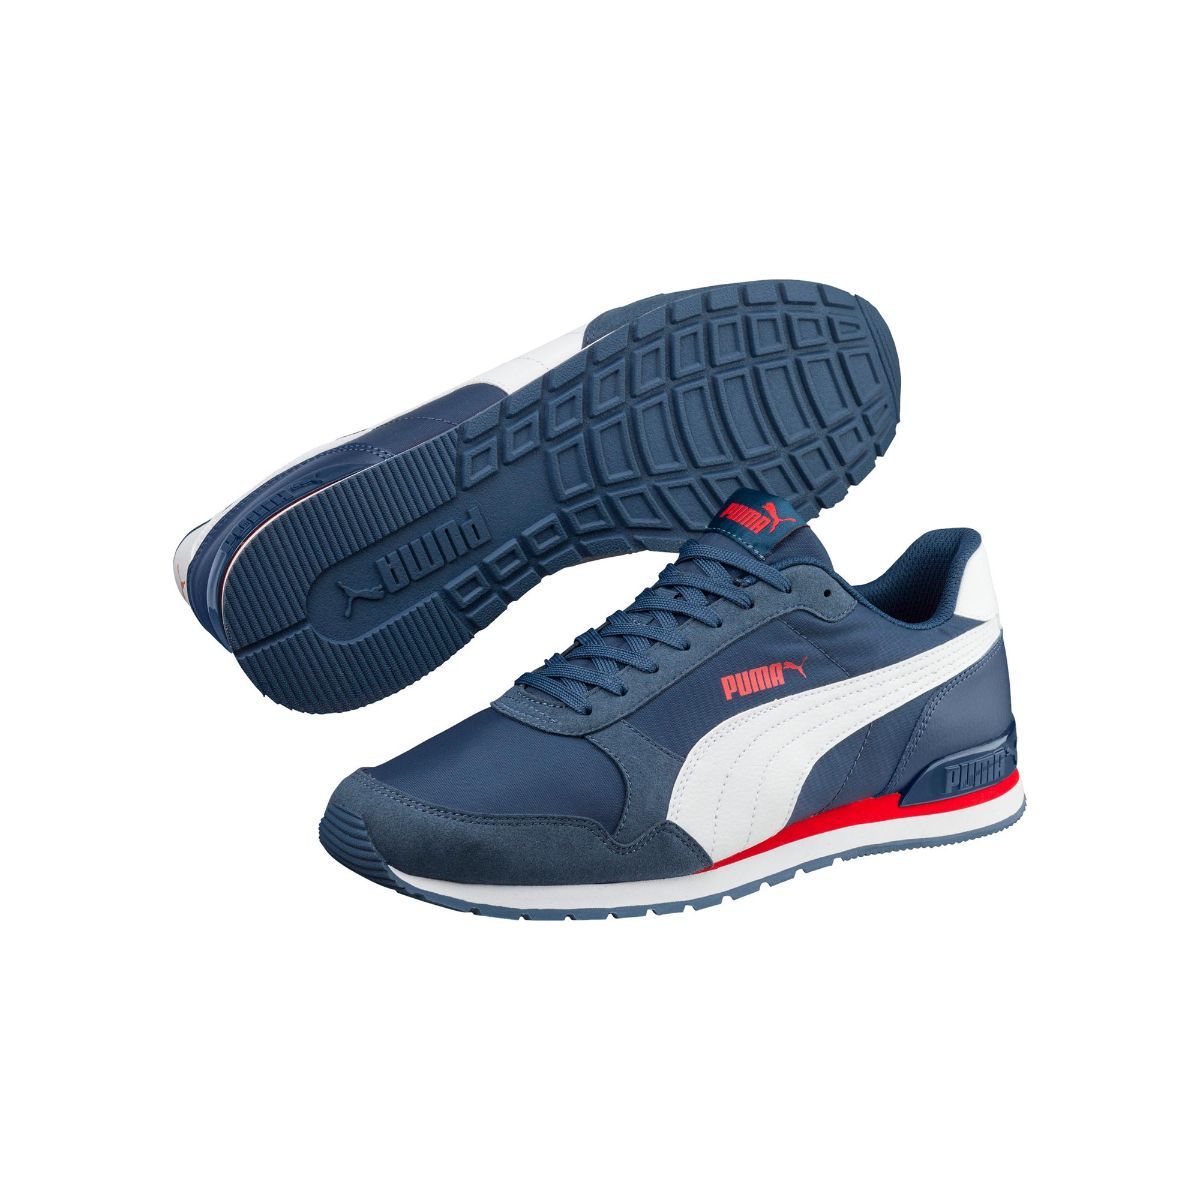 Buy Puma Unisex Adult St Runner V2 Sneakers White-Carrot-Star Sapphire  Running Shoe-10 Kids UK (365277) at Amazon.in